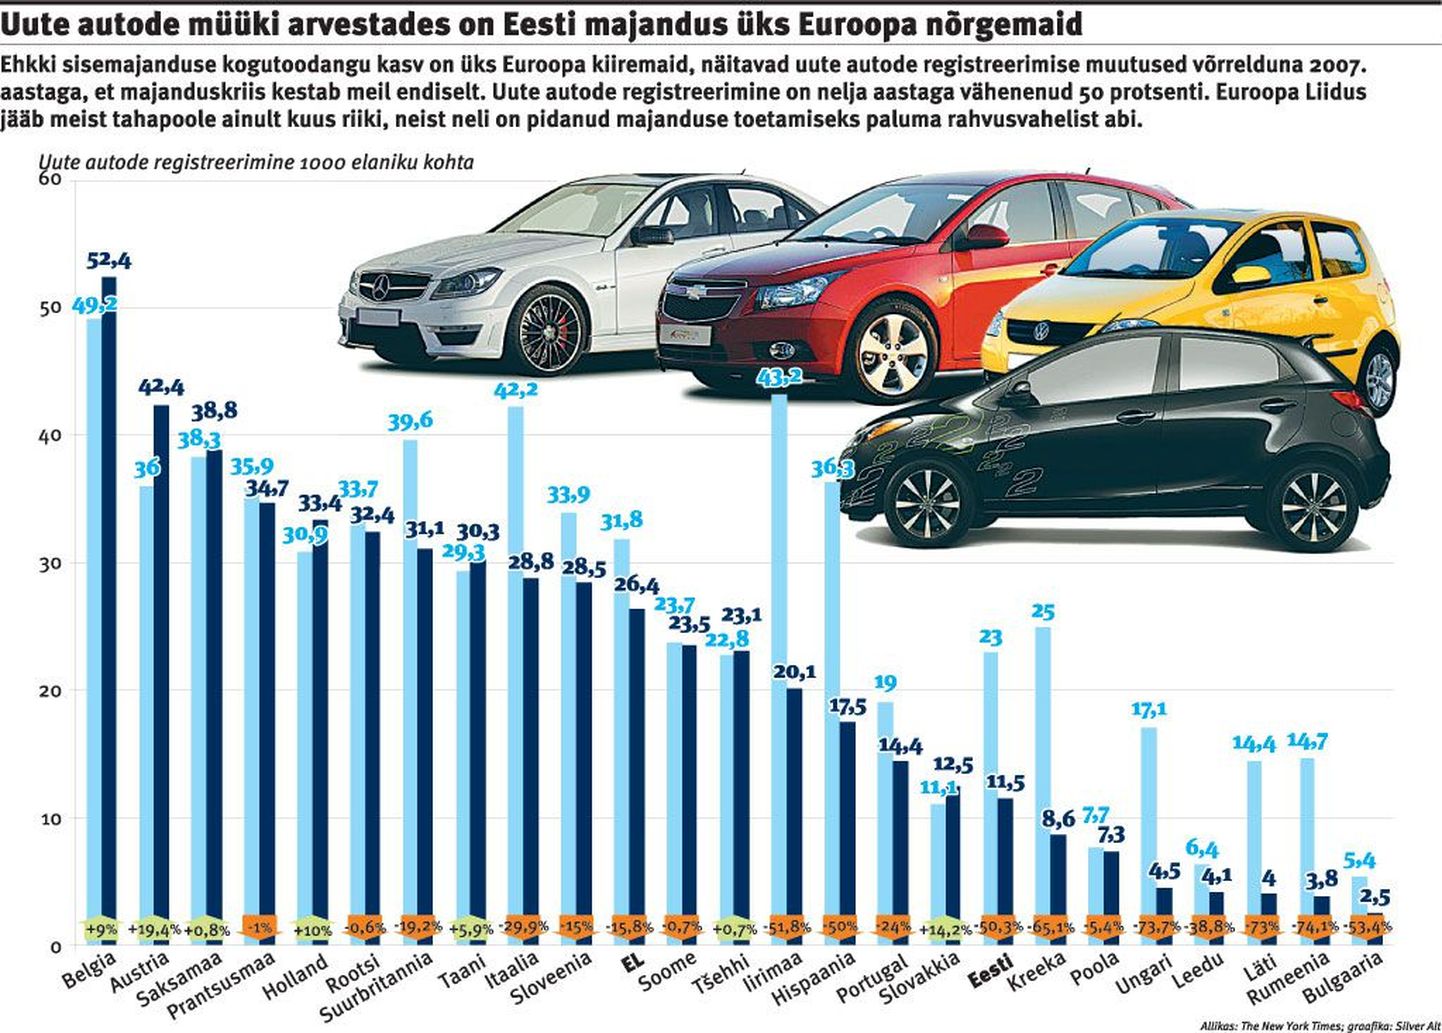 Успешность Эстонии кажущаяся, автомобили перестали покупать.